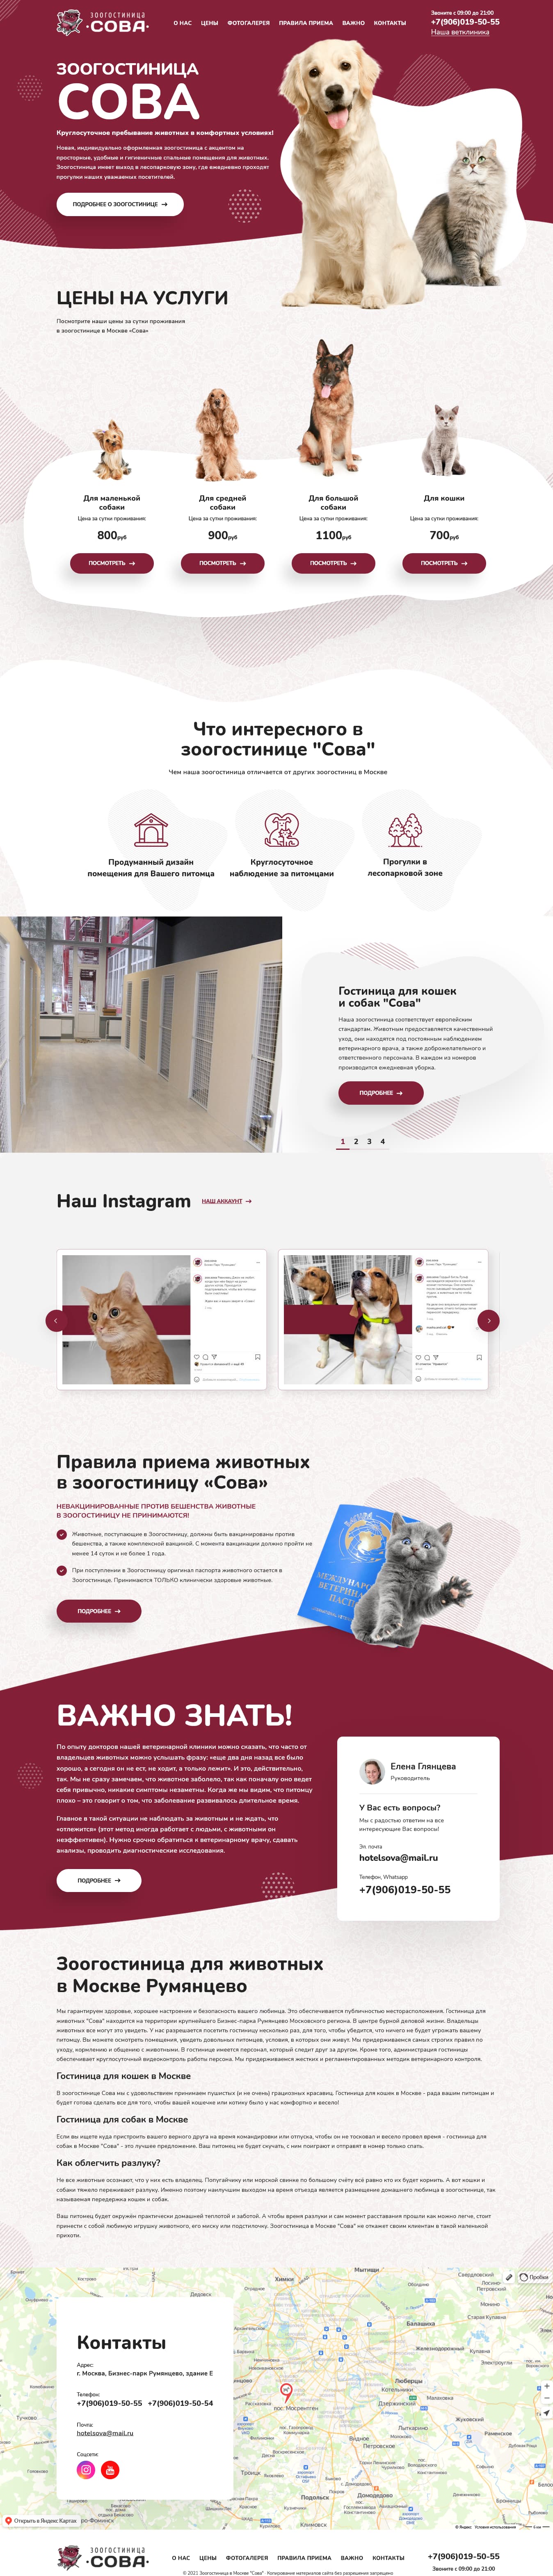 Разработка сайта зоогостиницы в Москве "Сова"